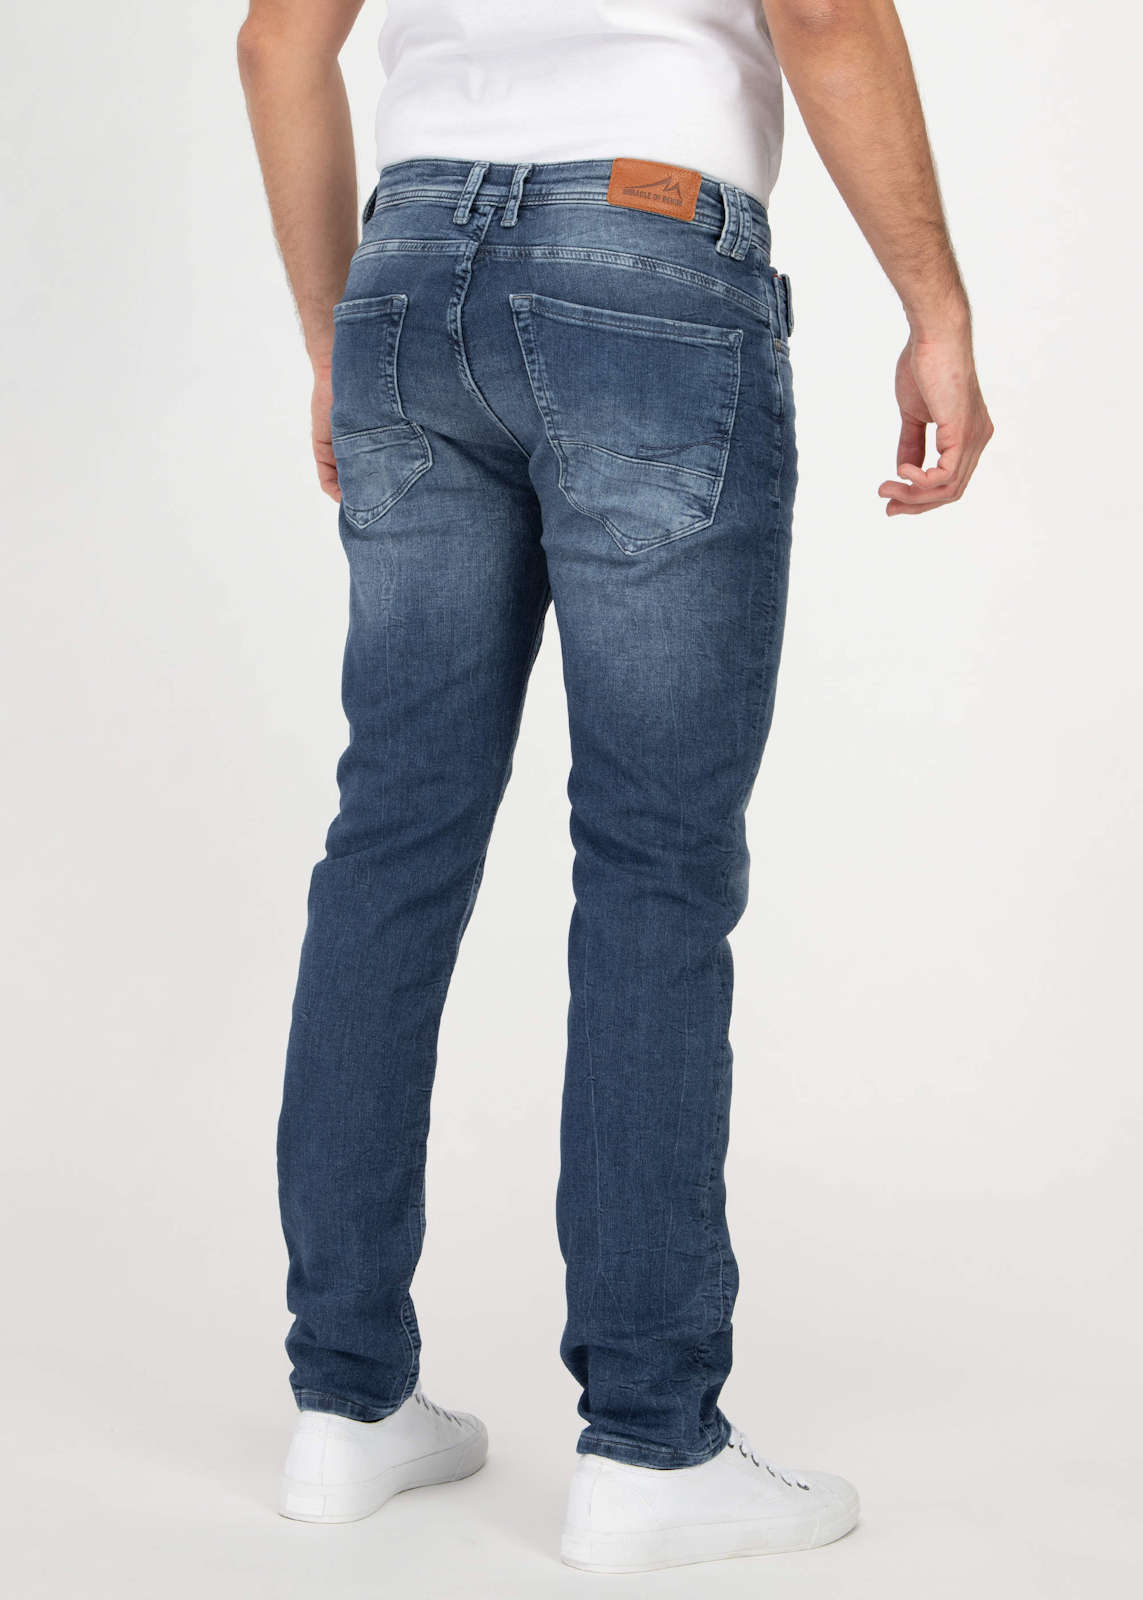 M.O.D Herren Straight Leg Jeans Hose Ricardo Regular Fit SP20-1002